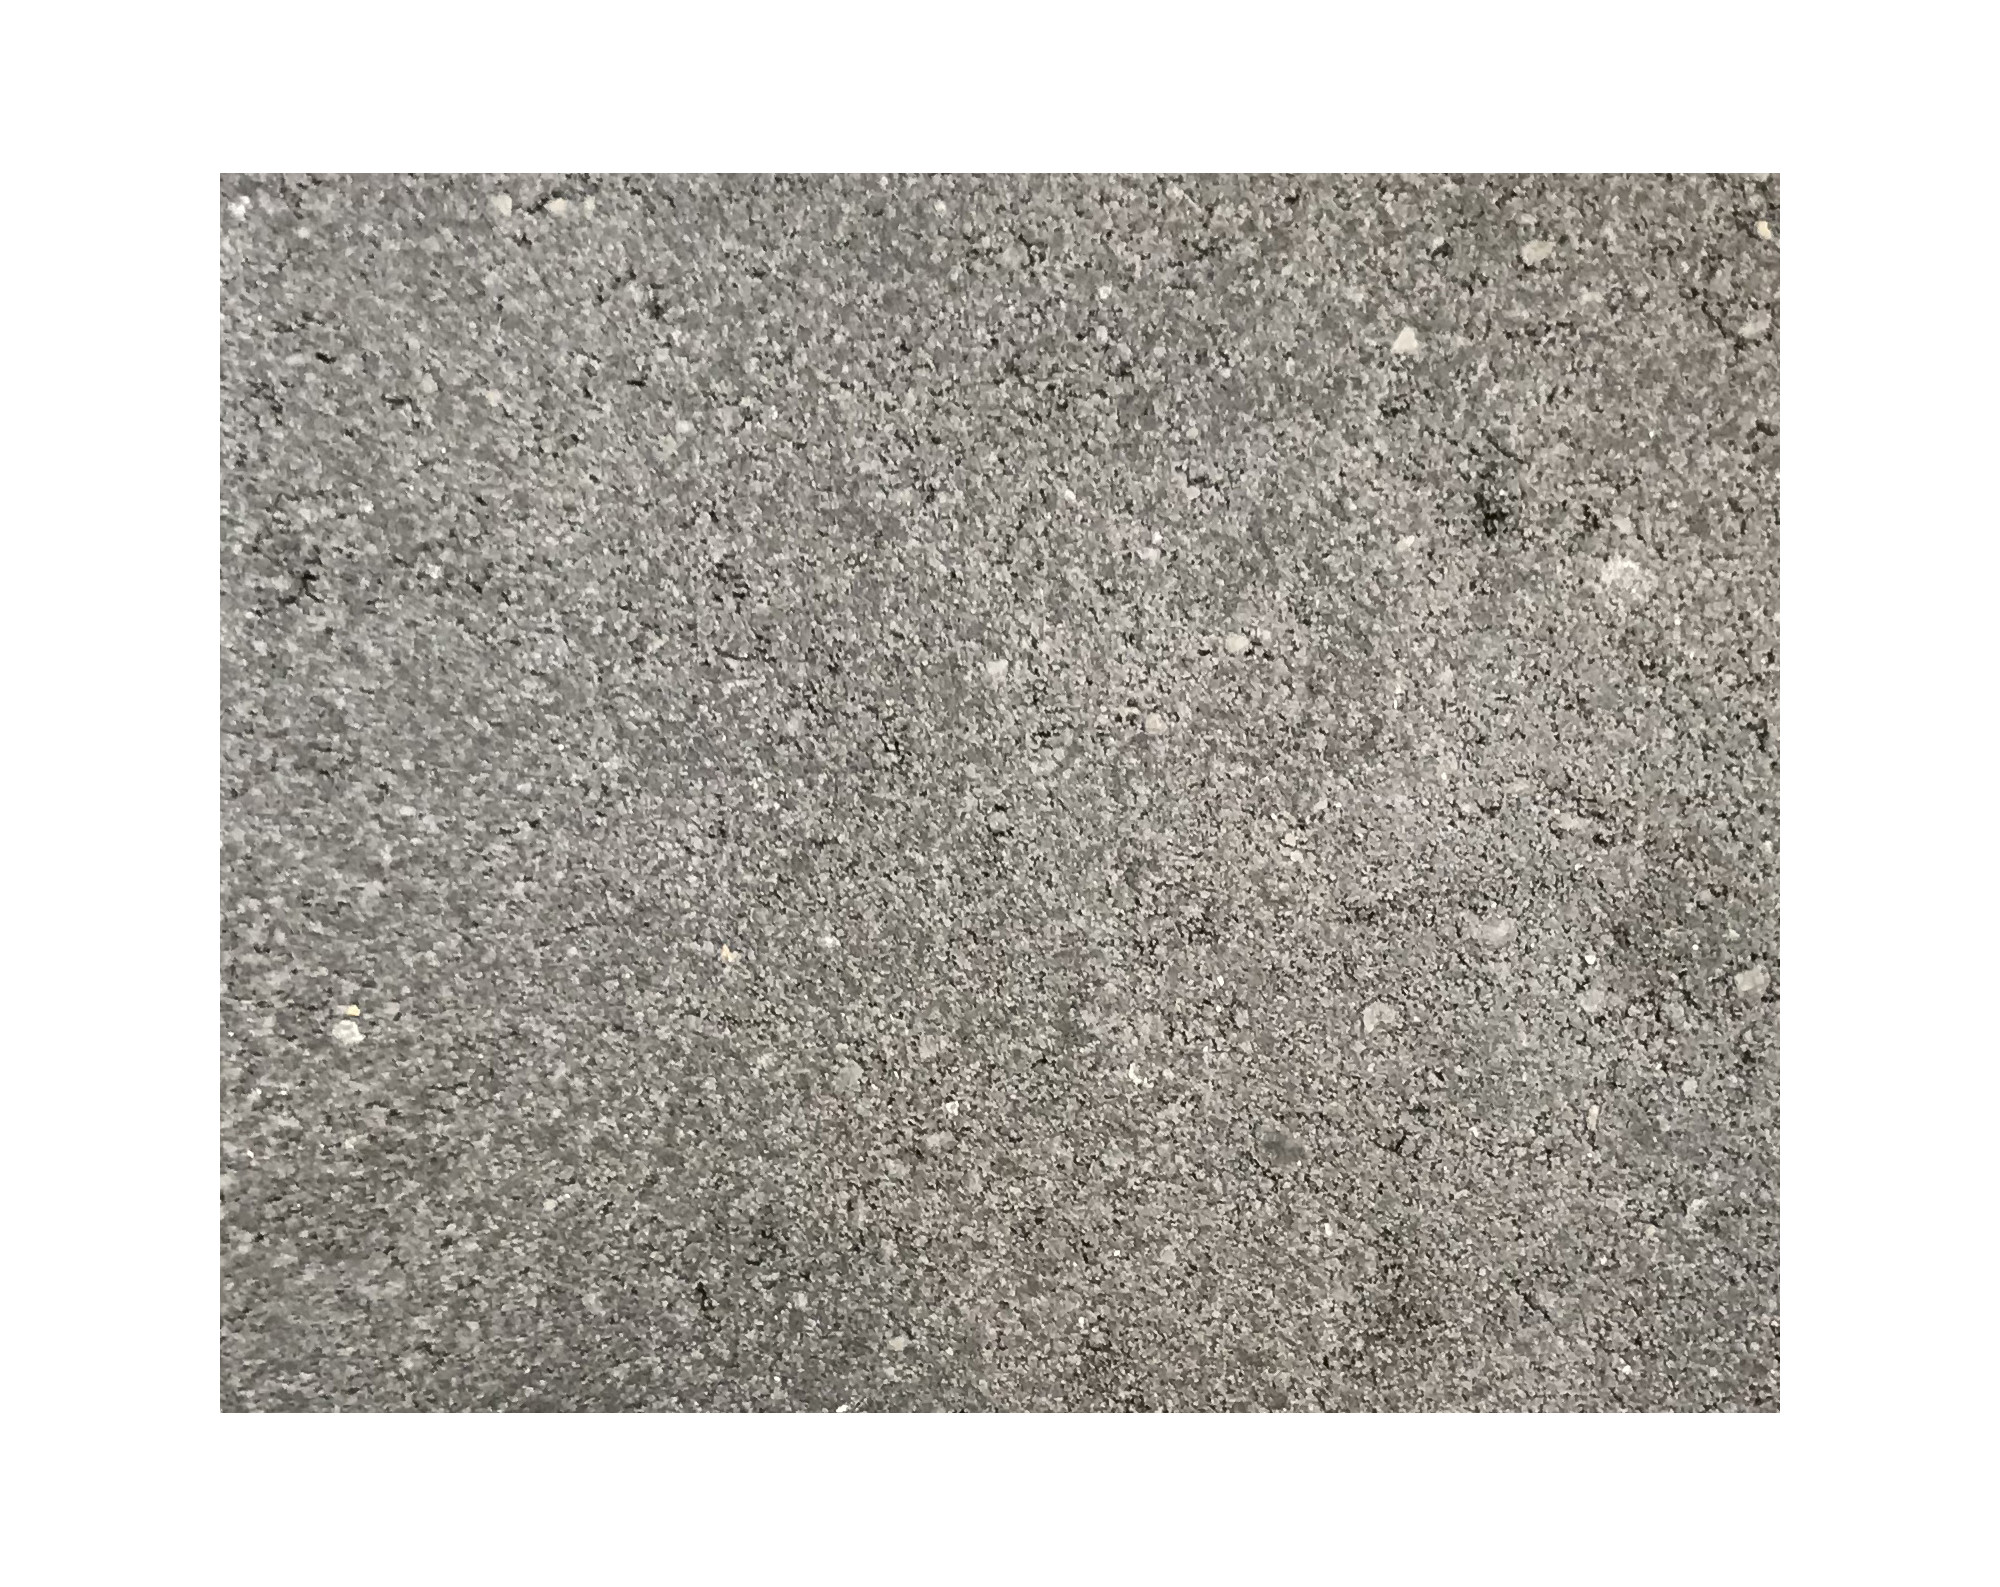 Harmo roc athenset, rustica-serie, ovaal d: 3,50mx7,50m, a.zwart, beton